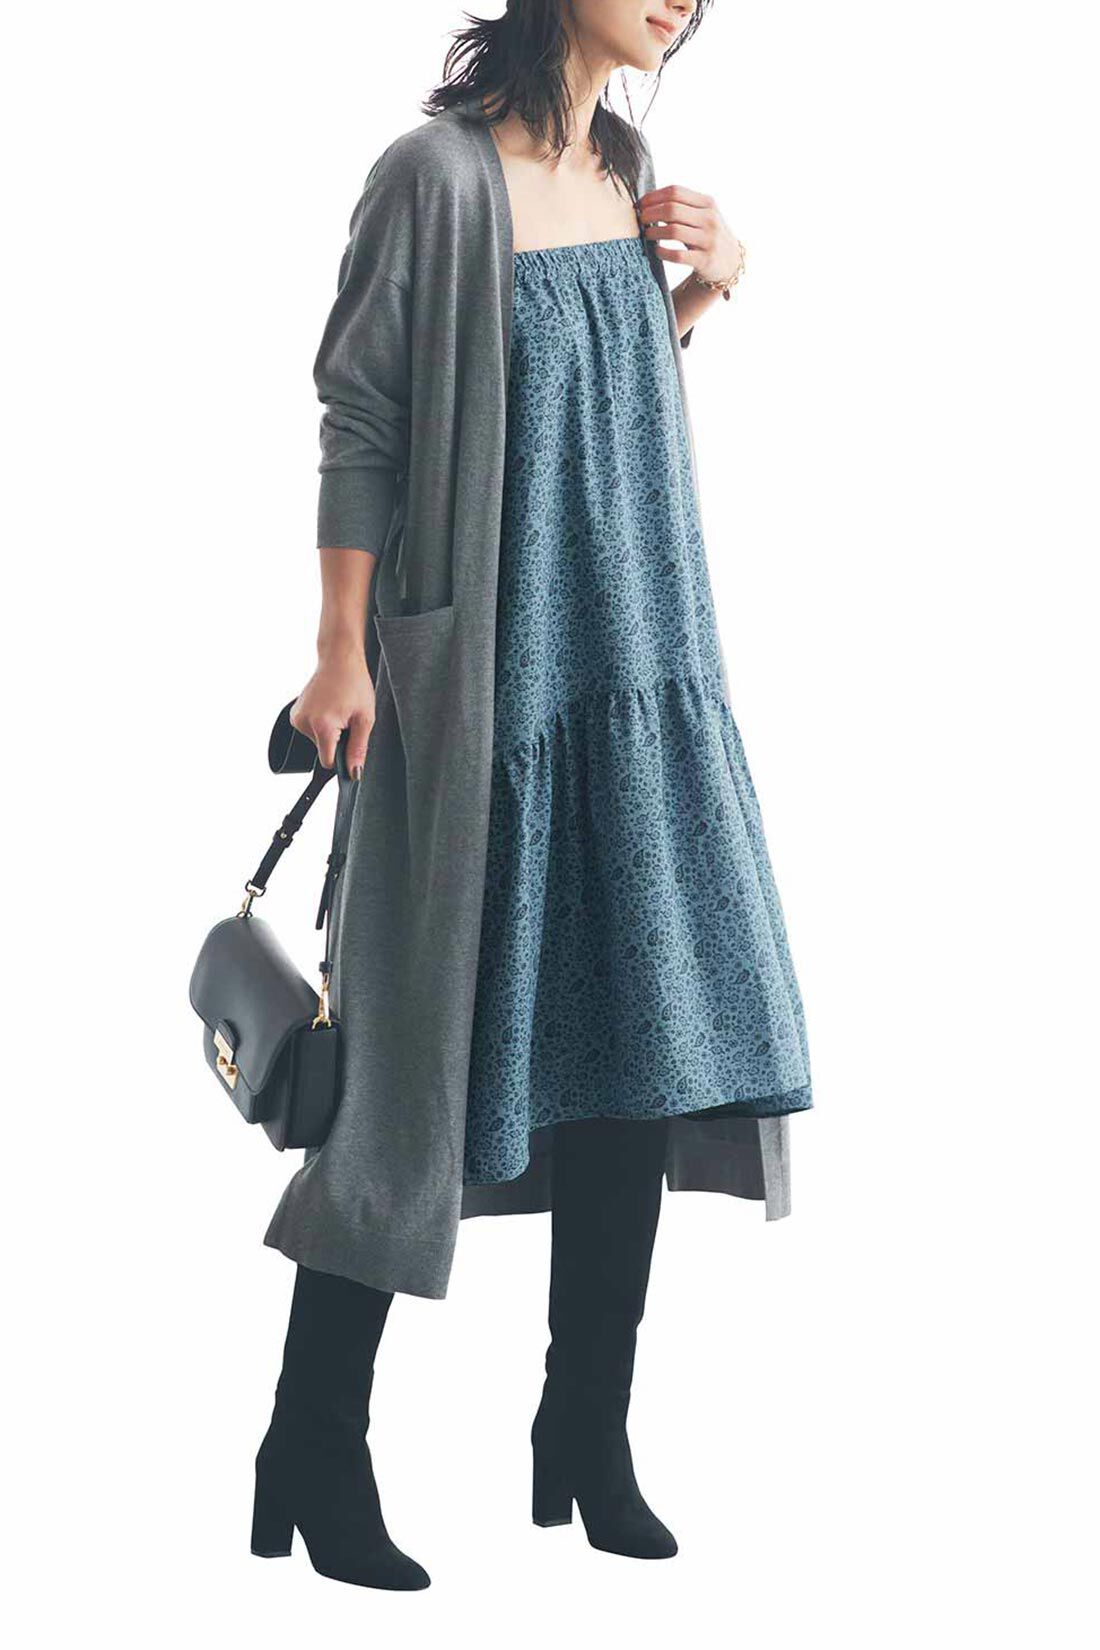 イディット|IEDIT[イディット]　福田麻琴さんコラボ 着まわし力抜群の2-WAYスカート〈グレイッシュブルー〉|キャミワンピとしても着られます。